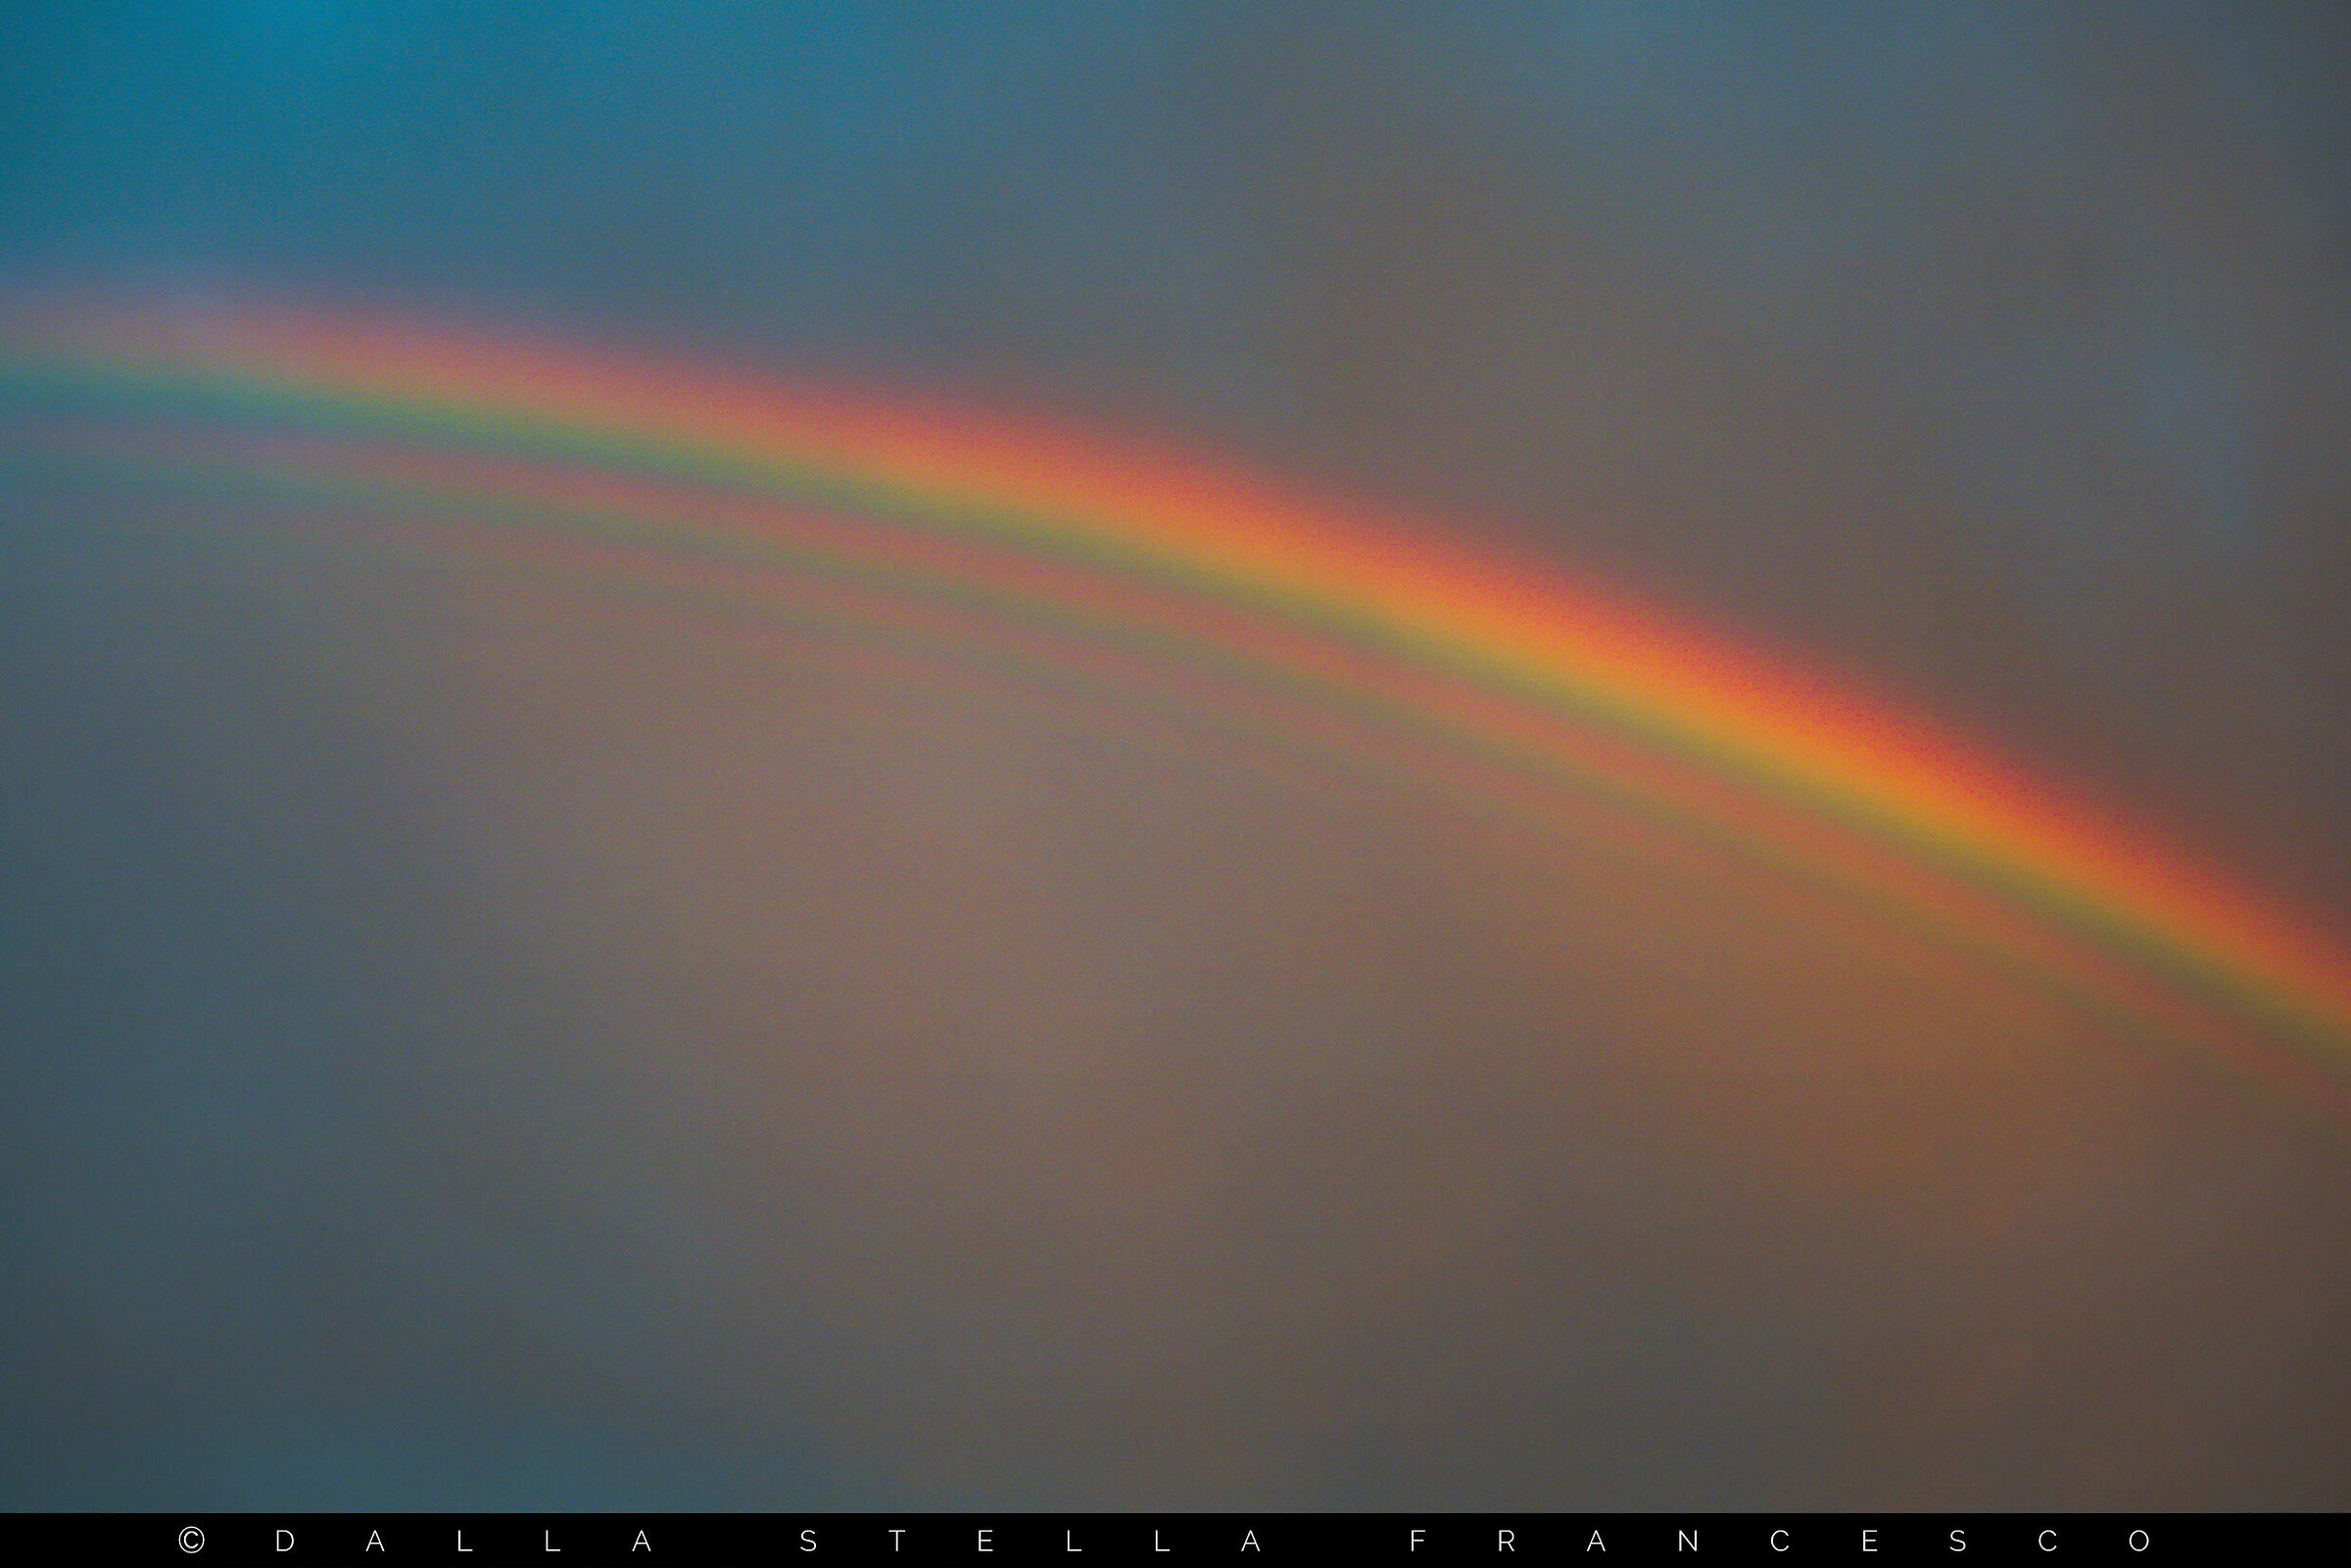 Eccezionale arcobaleno supernumerario...